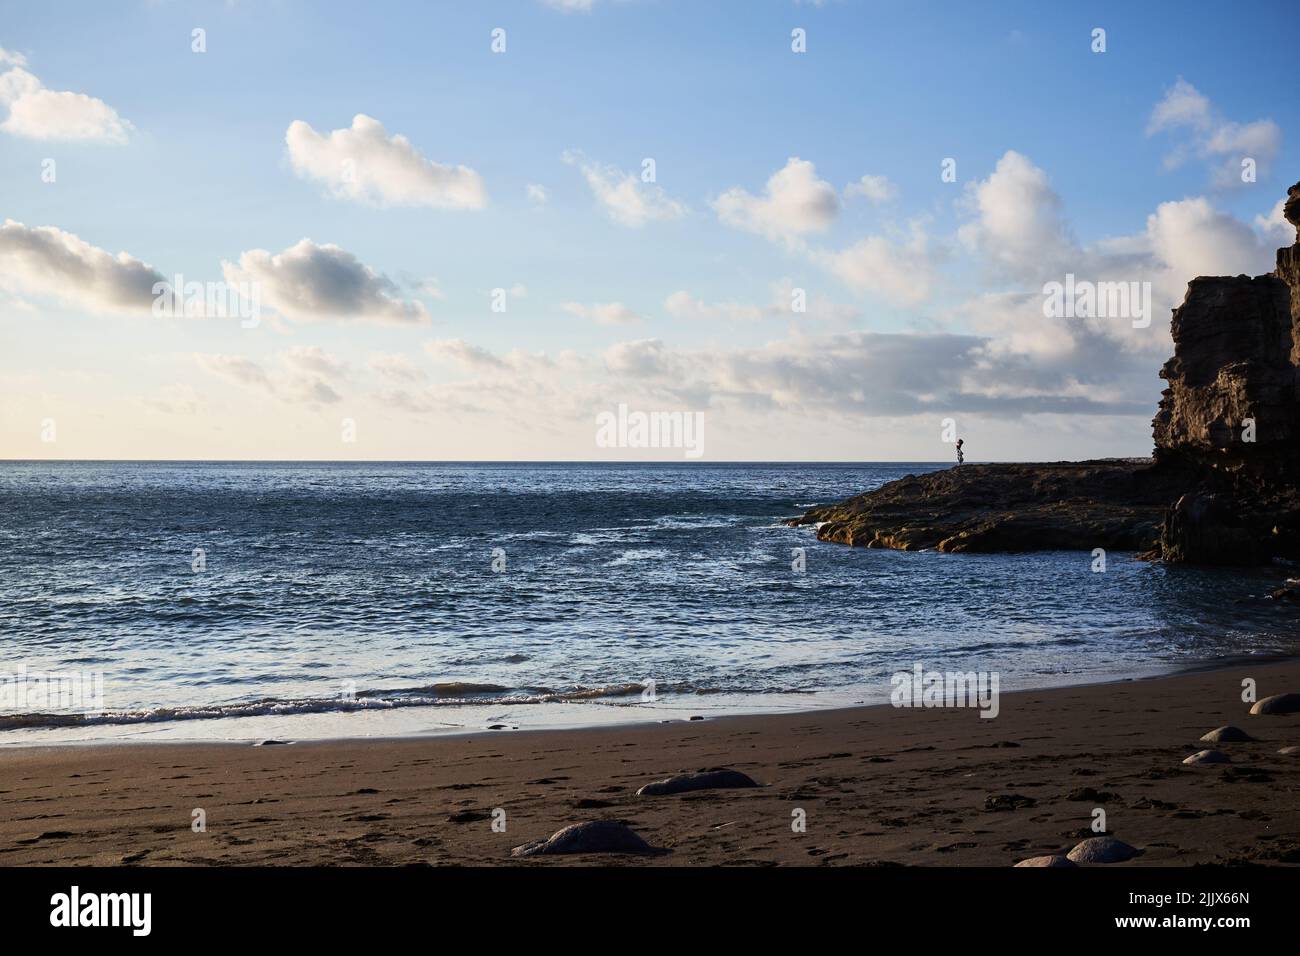 Mare ondinante spiaggia di sabbia con ruvida scogliera rocciosa contro cielo nuvoloso il giorno d'estate nella zona costiera della natura Foto Stock